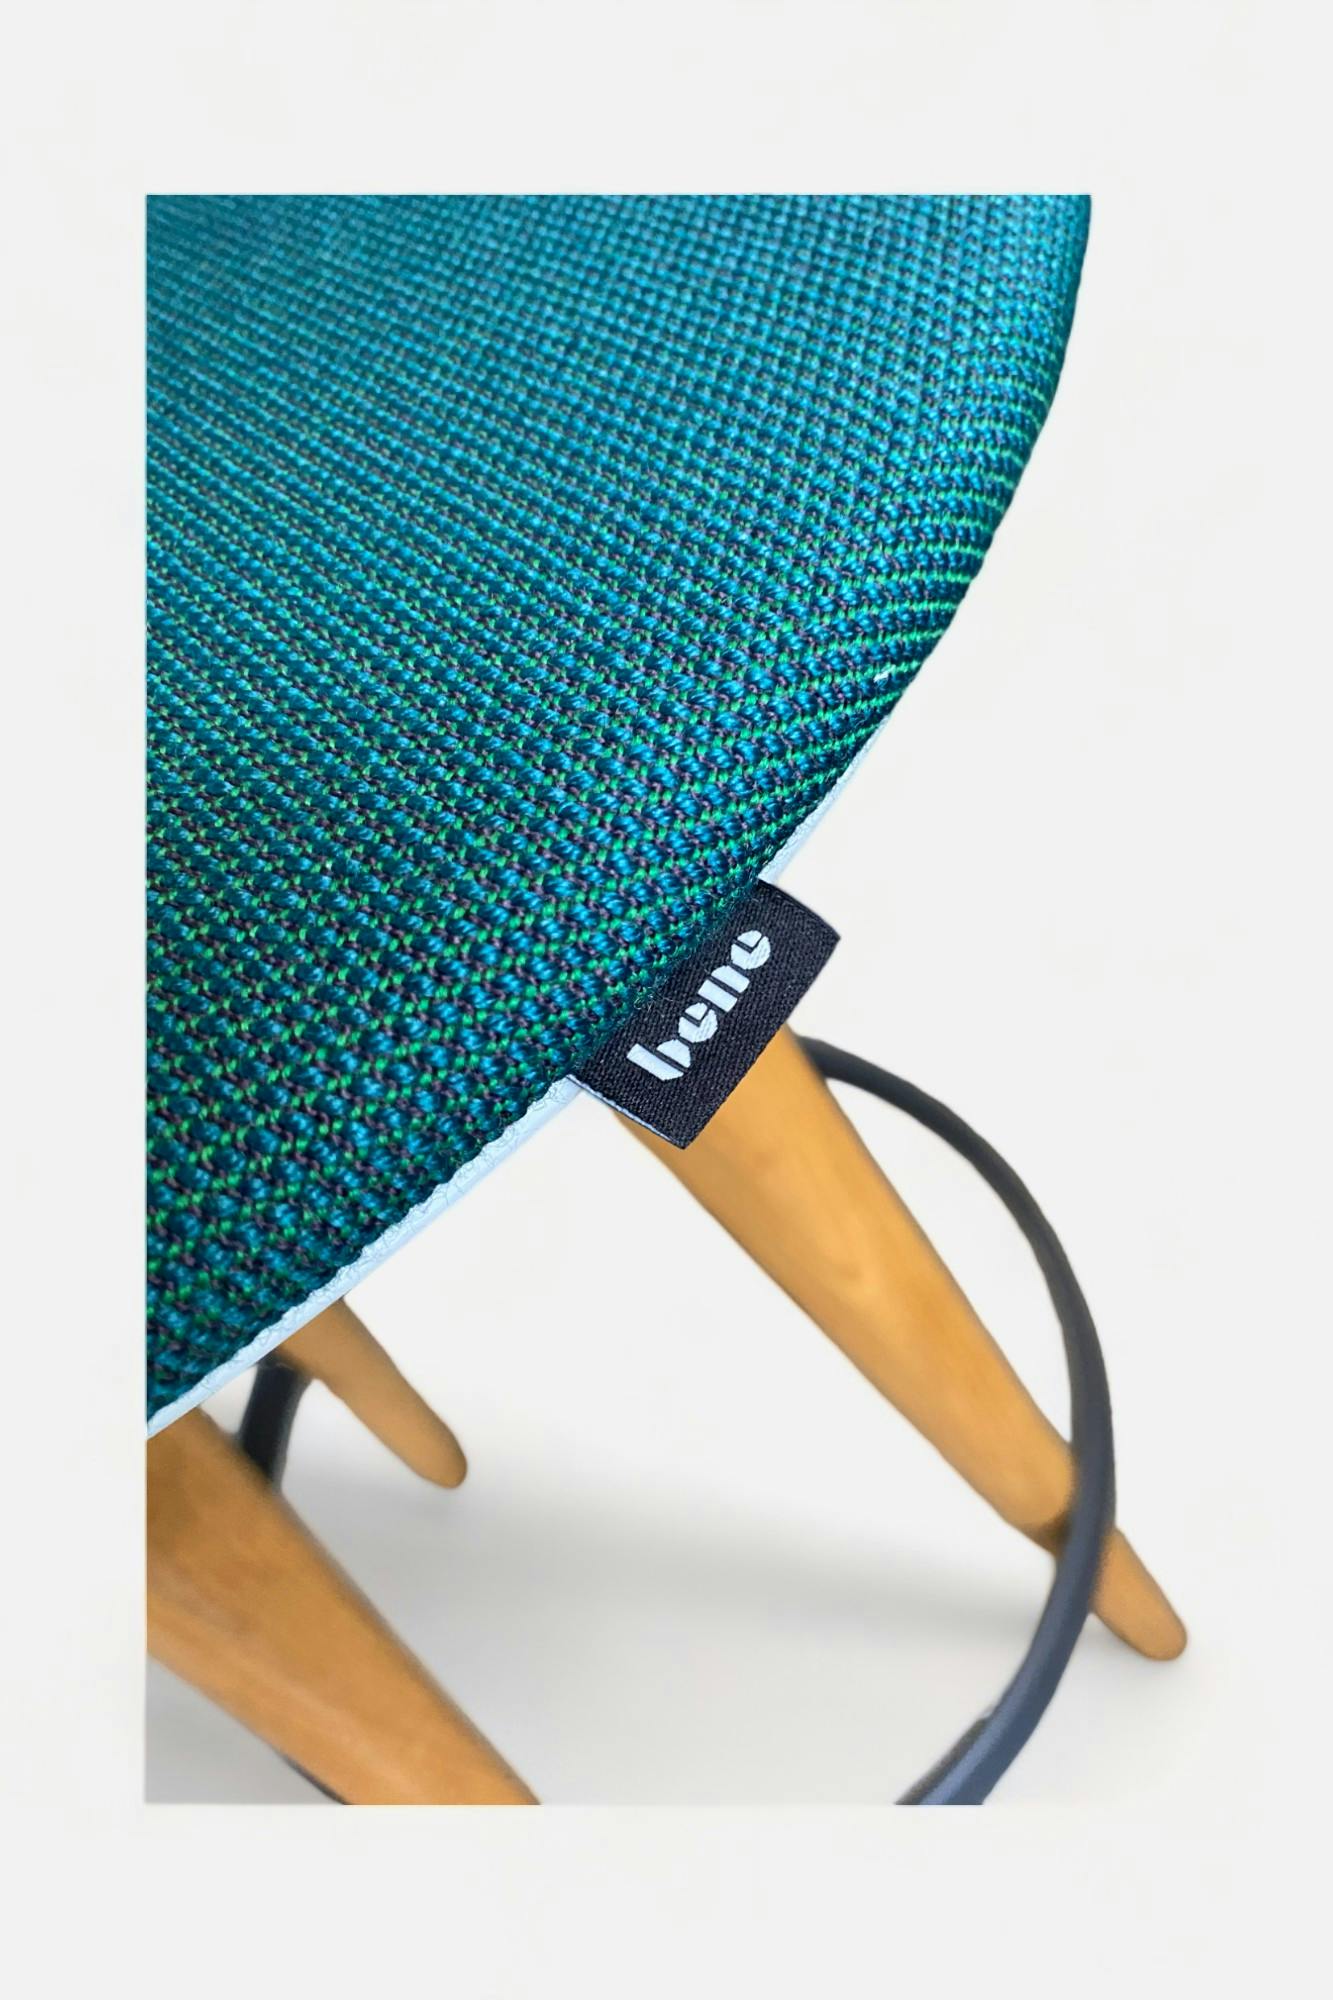 Bene Timba tabouret haut bleu vert sur pieds en bois - Qualité de seconde main "Chaises" - Relieve Furniture